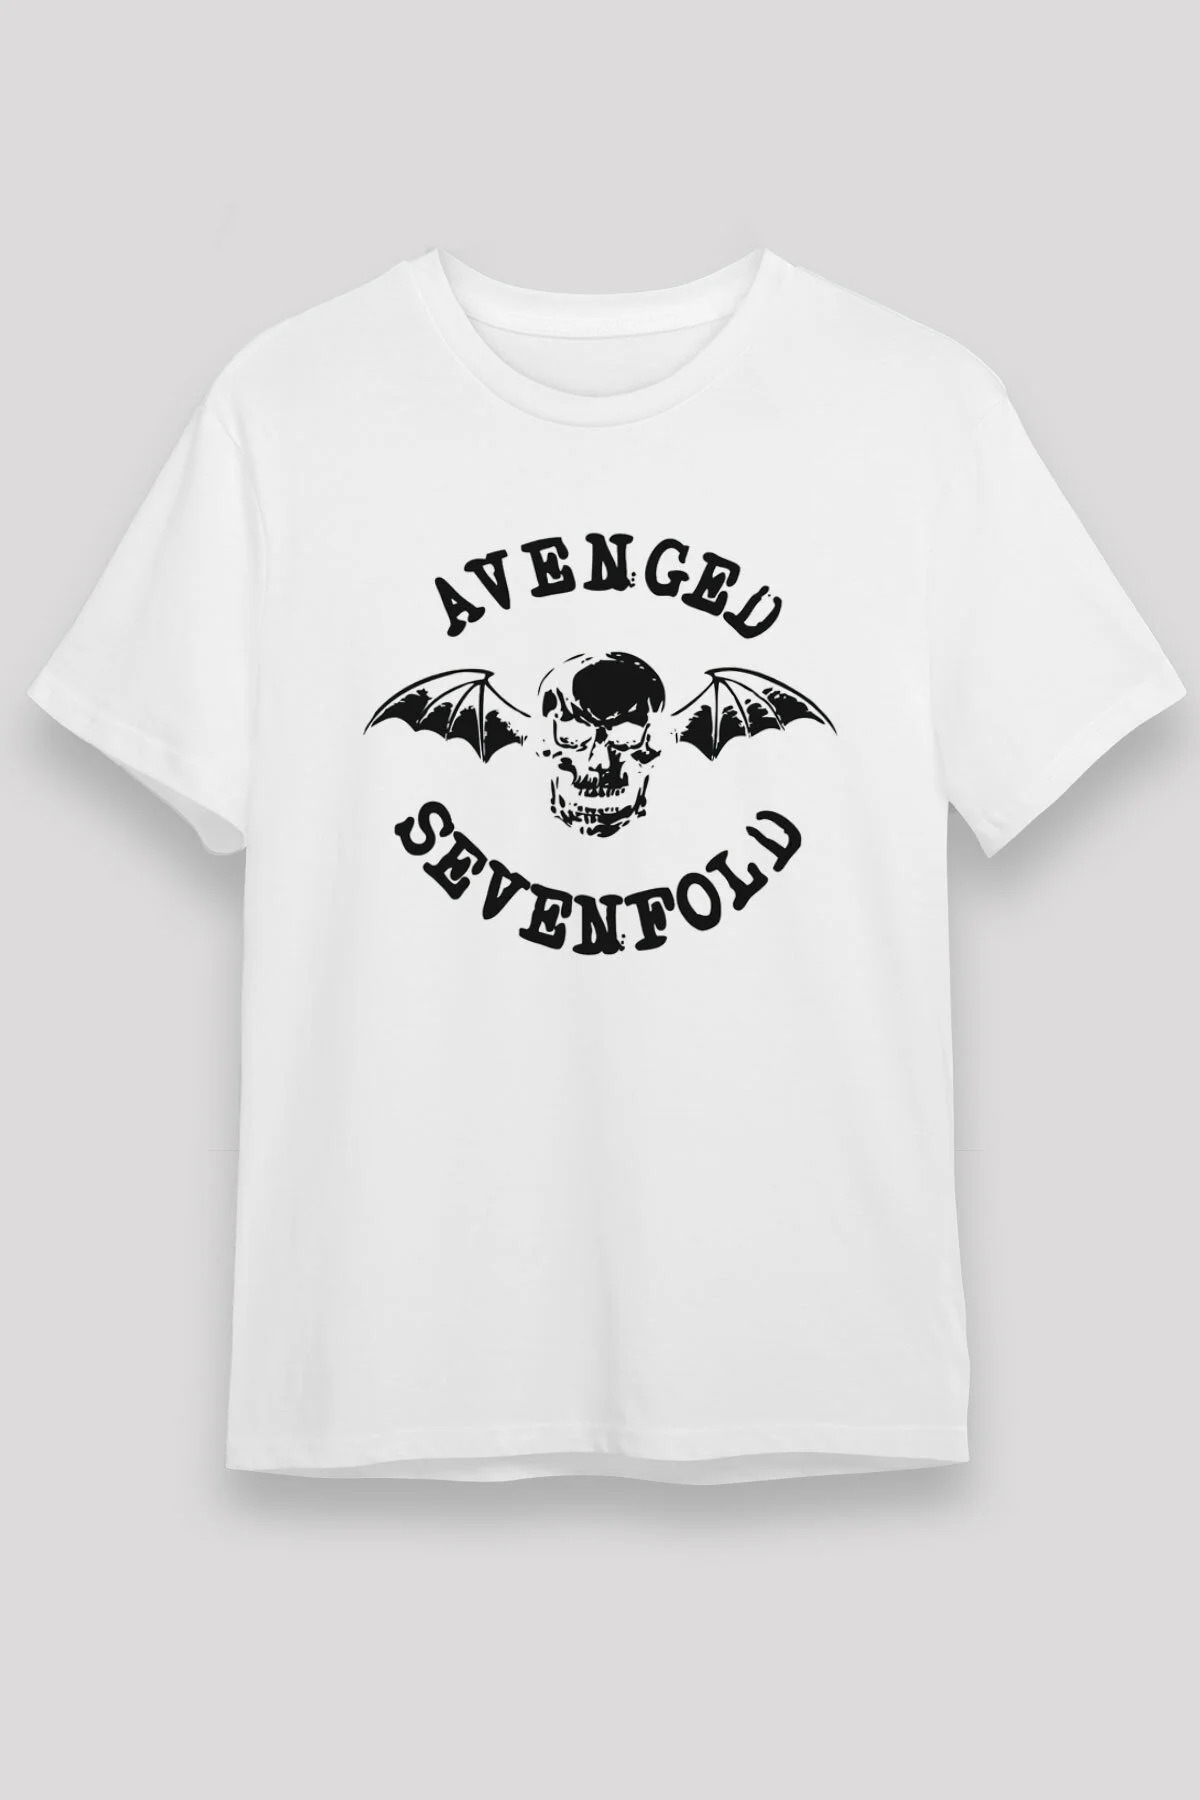 Avenged Sevenfold ,Music Band ,Unisex Tshirt 15